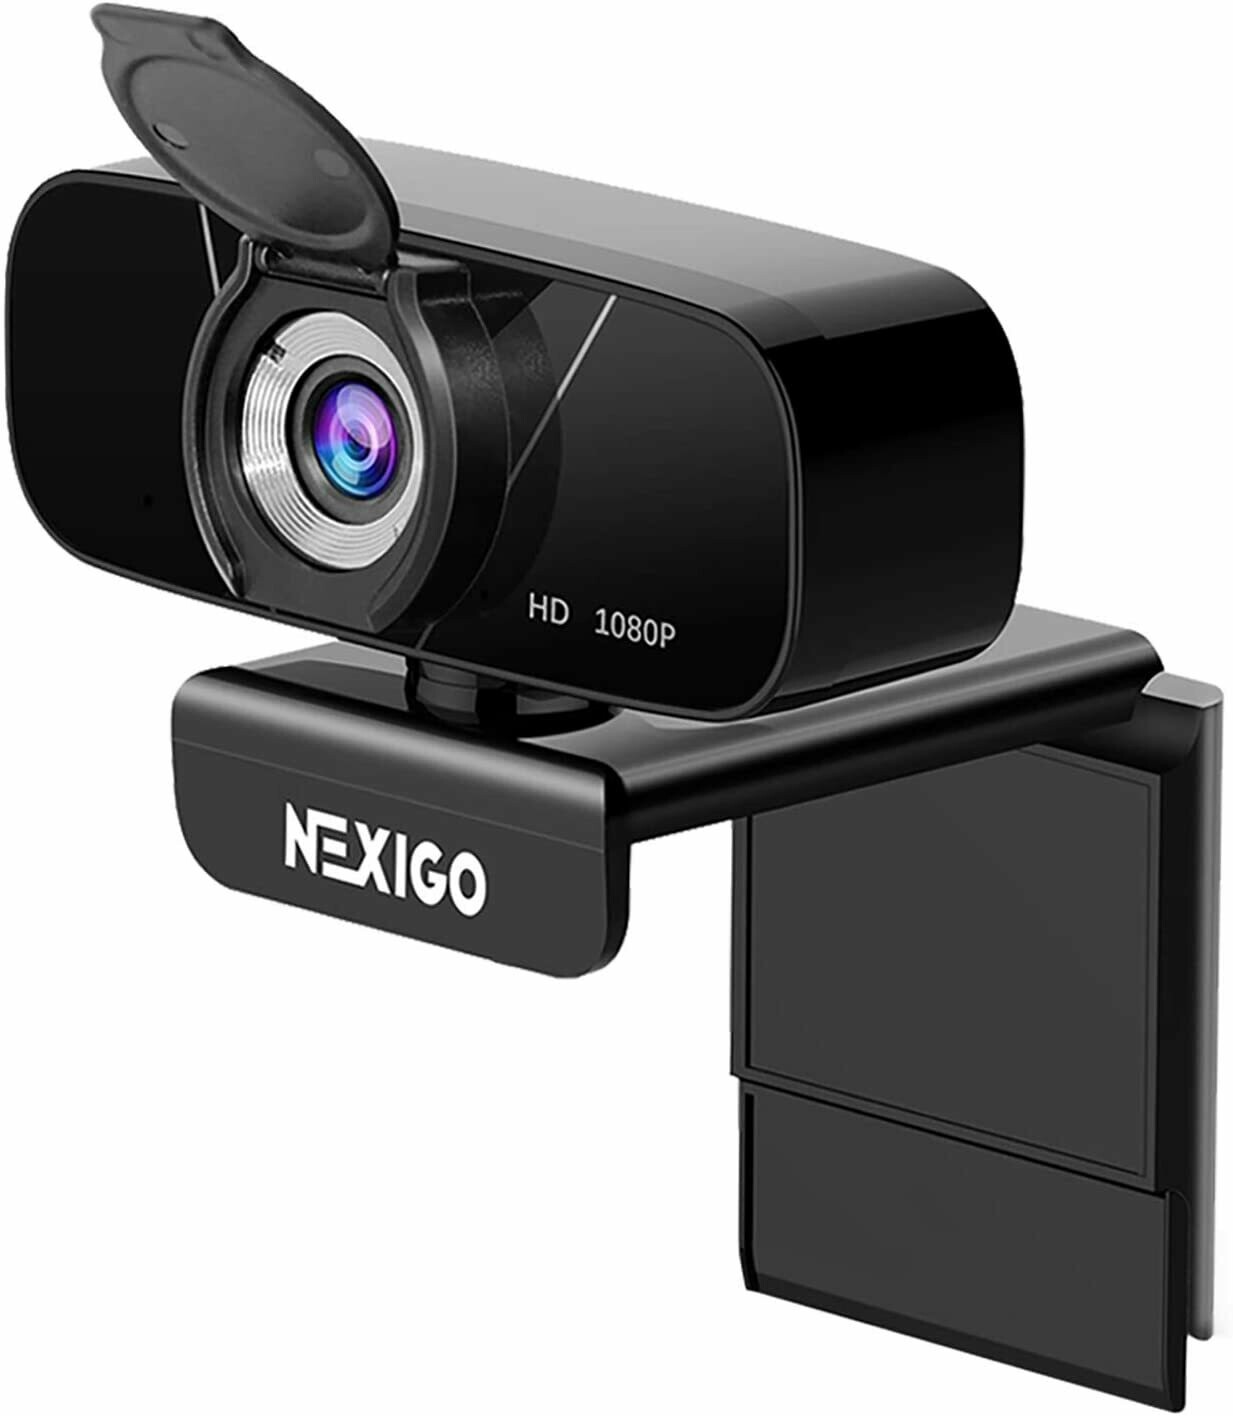 Video - Nexigo Web Cam HD 1080P